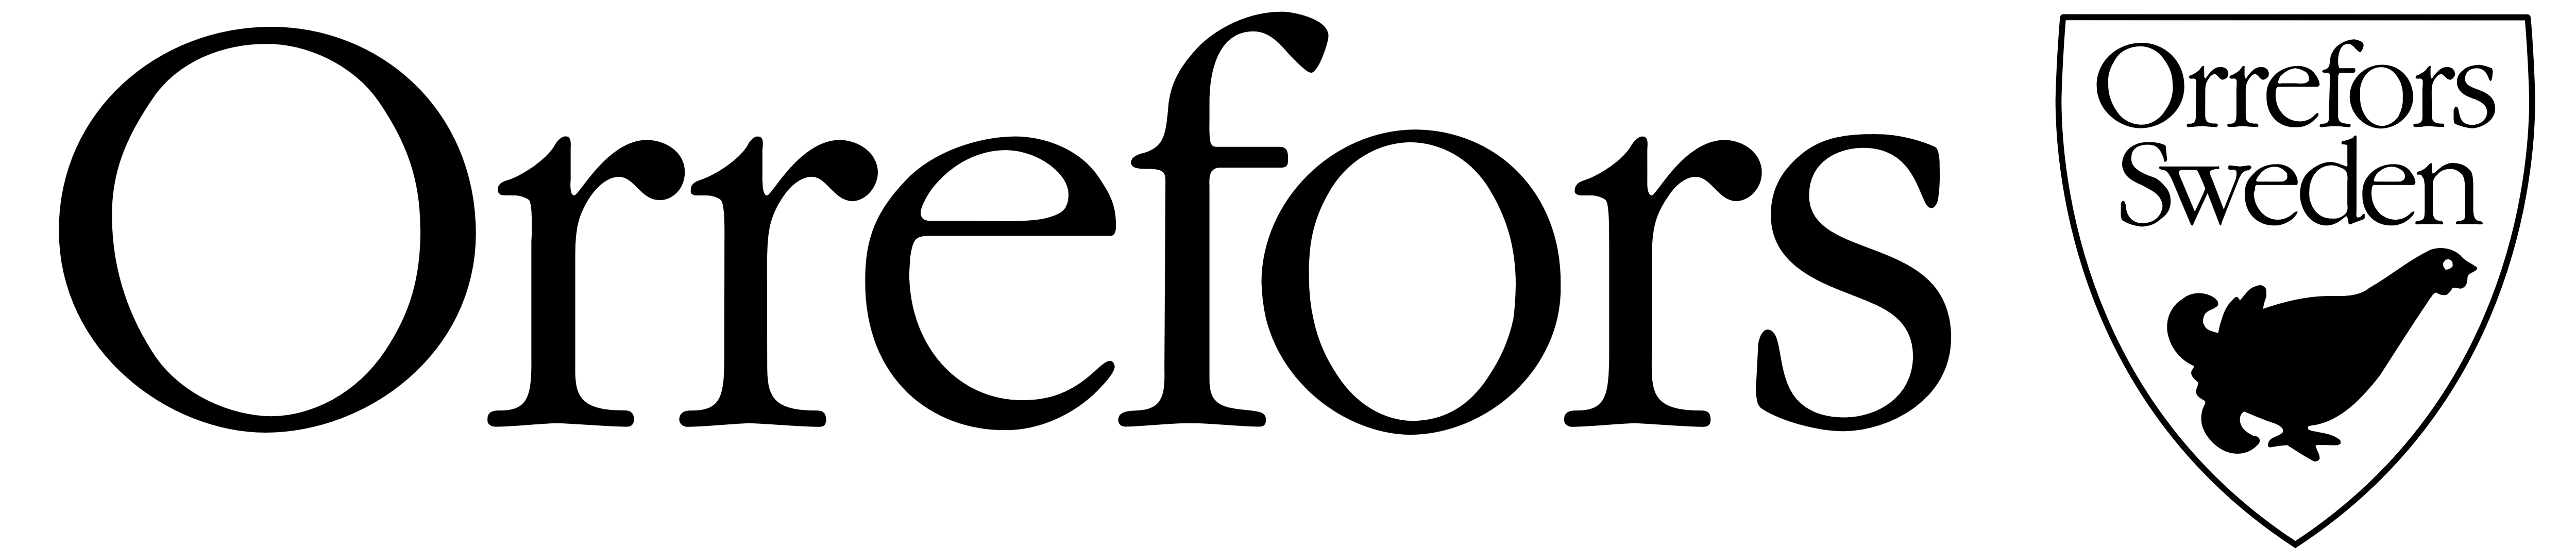 λογότυπο orrefors